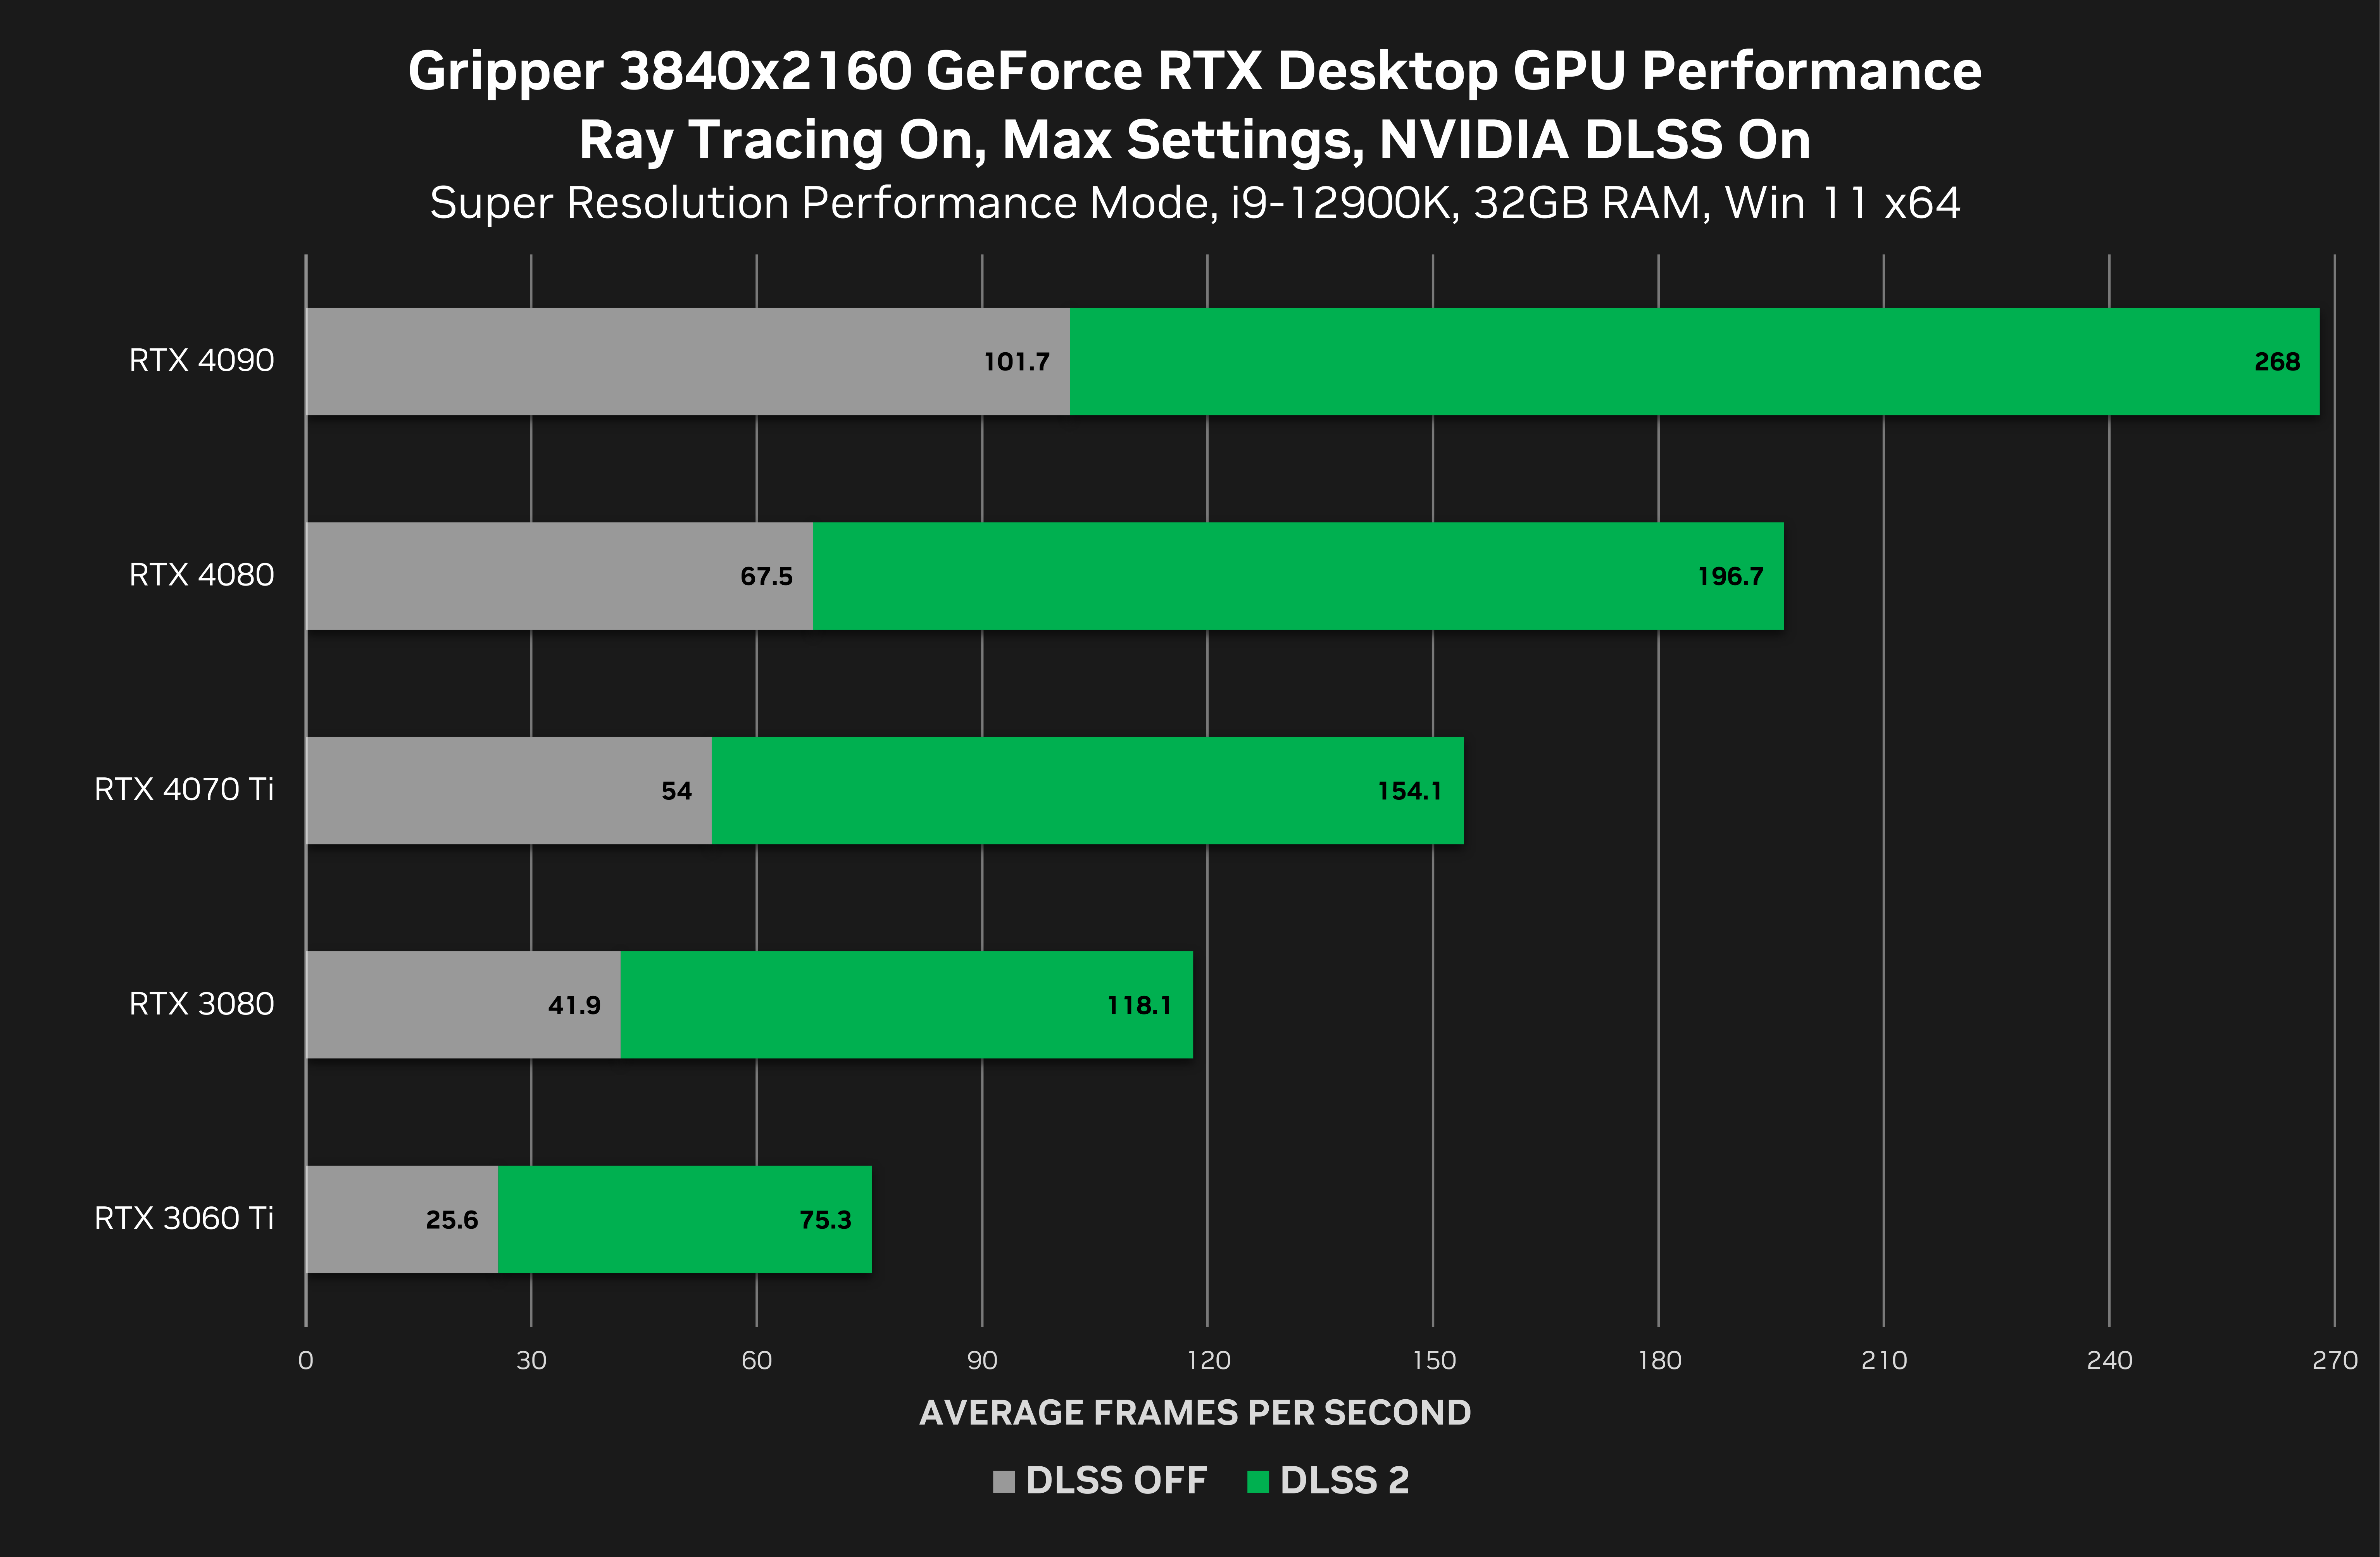 gripper-geforce-rtx-3840x2160-nvidia-dlss-desktop-gpu-performance.png